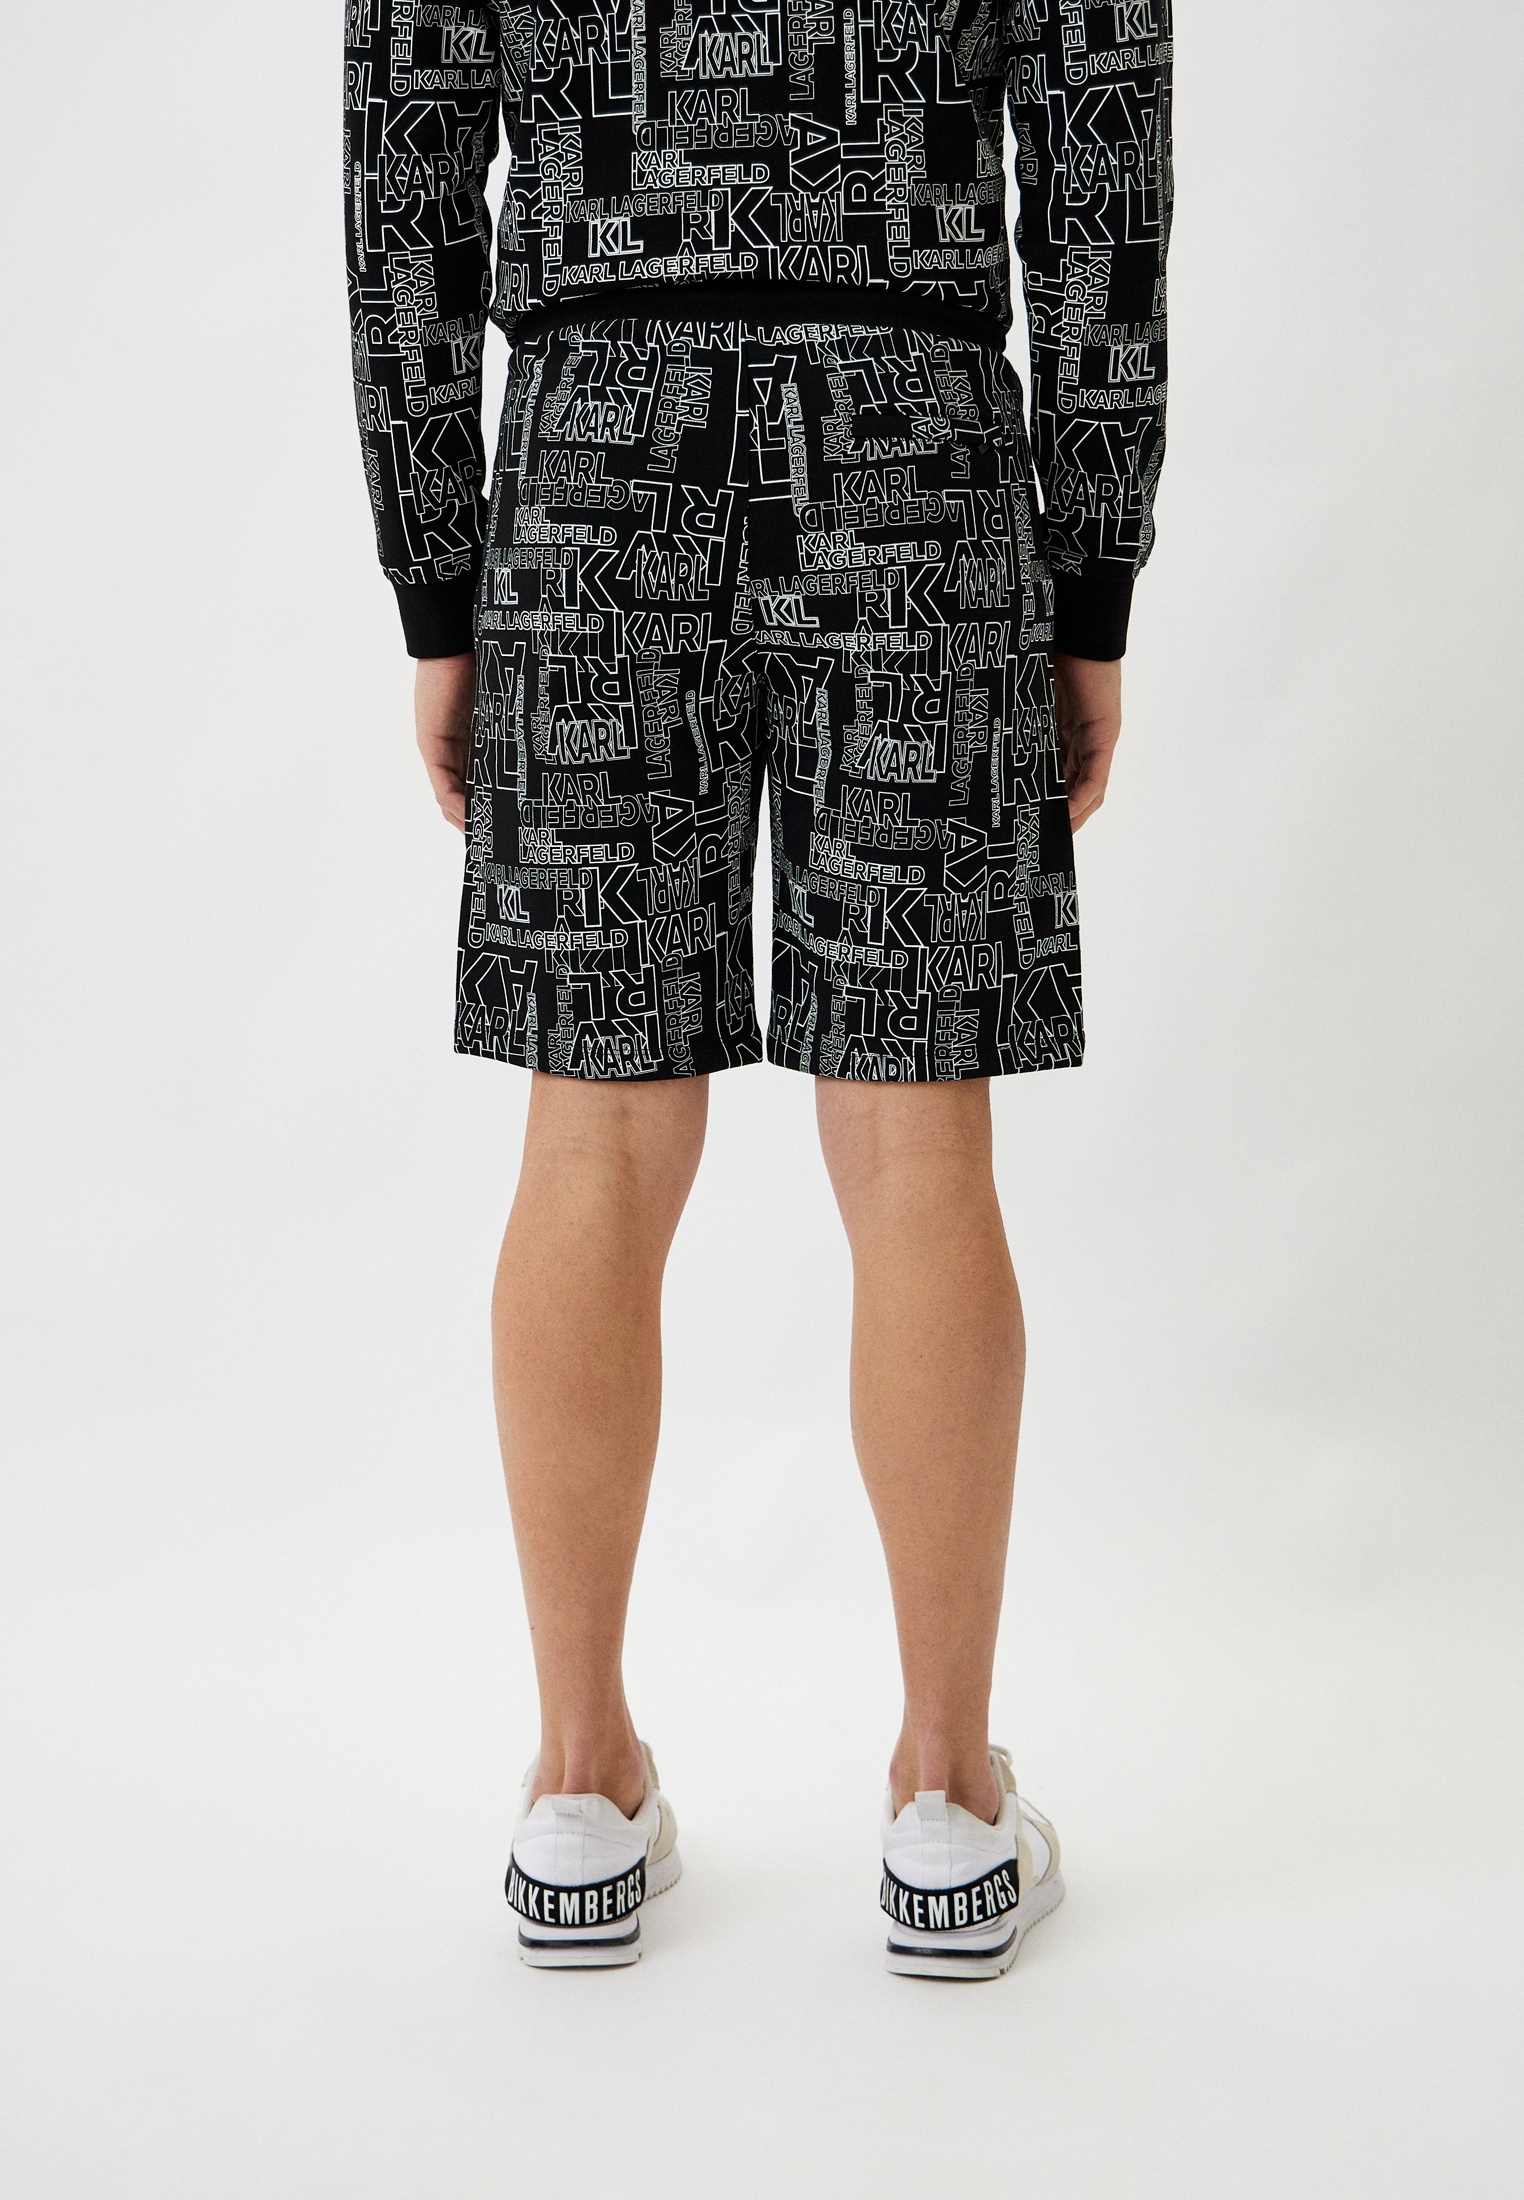 Мужские повседневные шорты Karl Lagerfeld (Карл Лагерфельд) 705061-541900: изображение 3